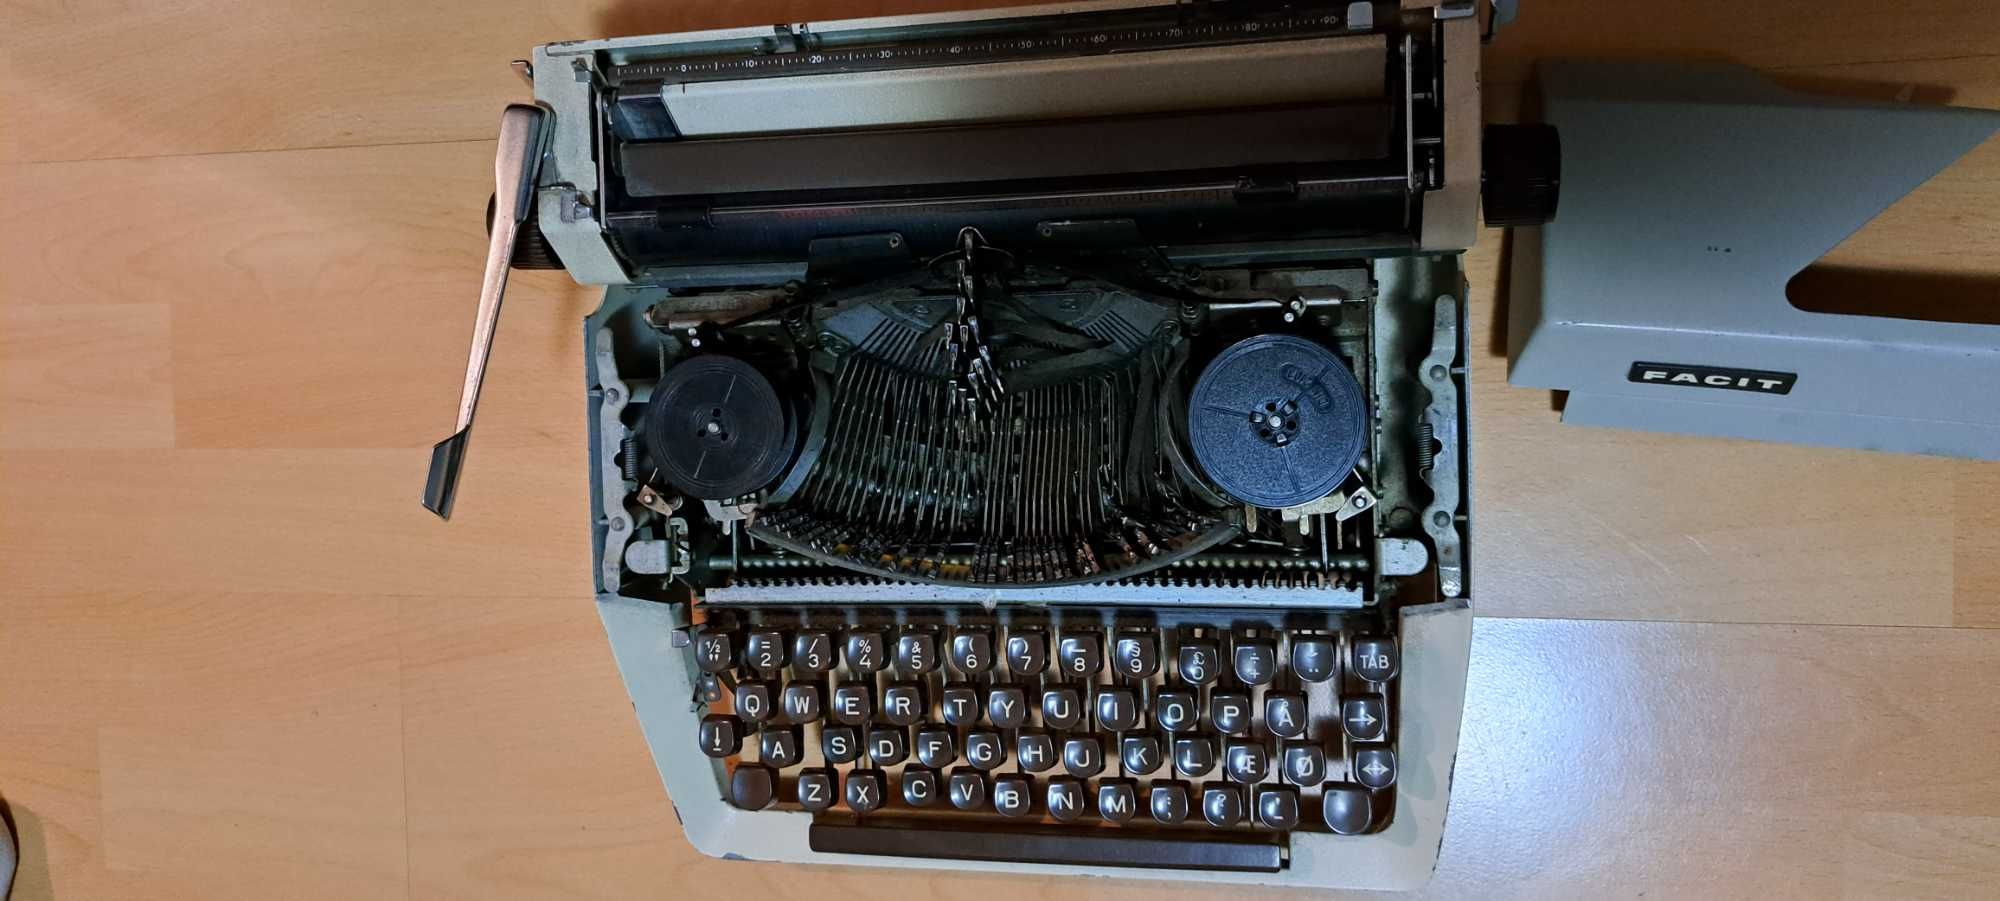 Masina de scris veche - FACIT